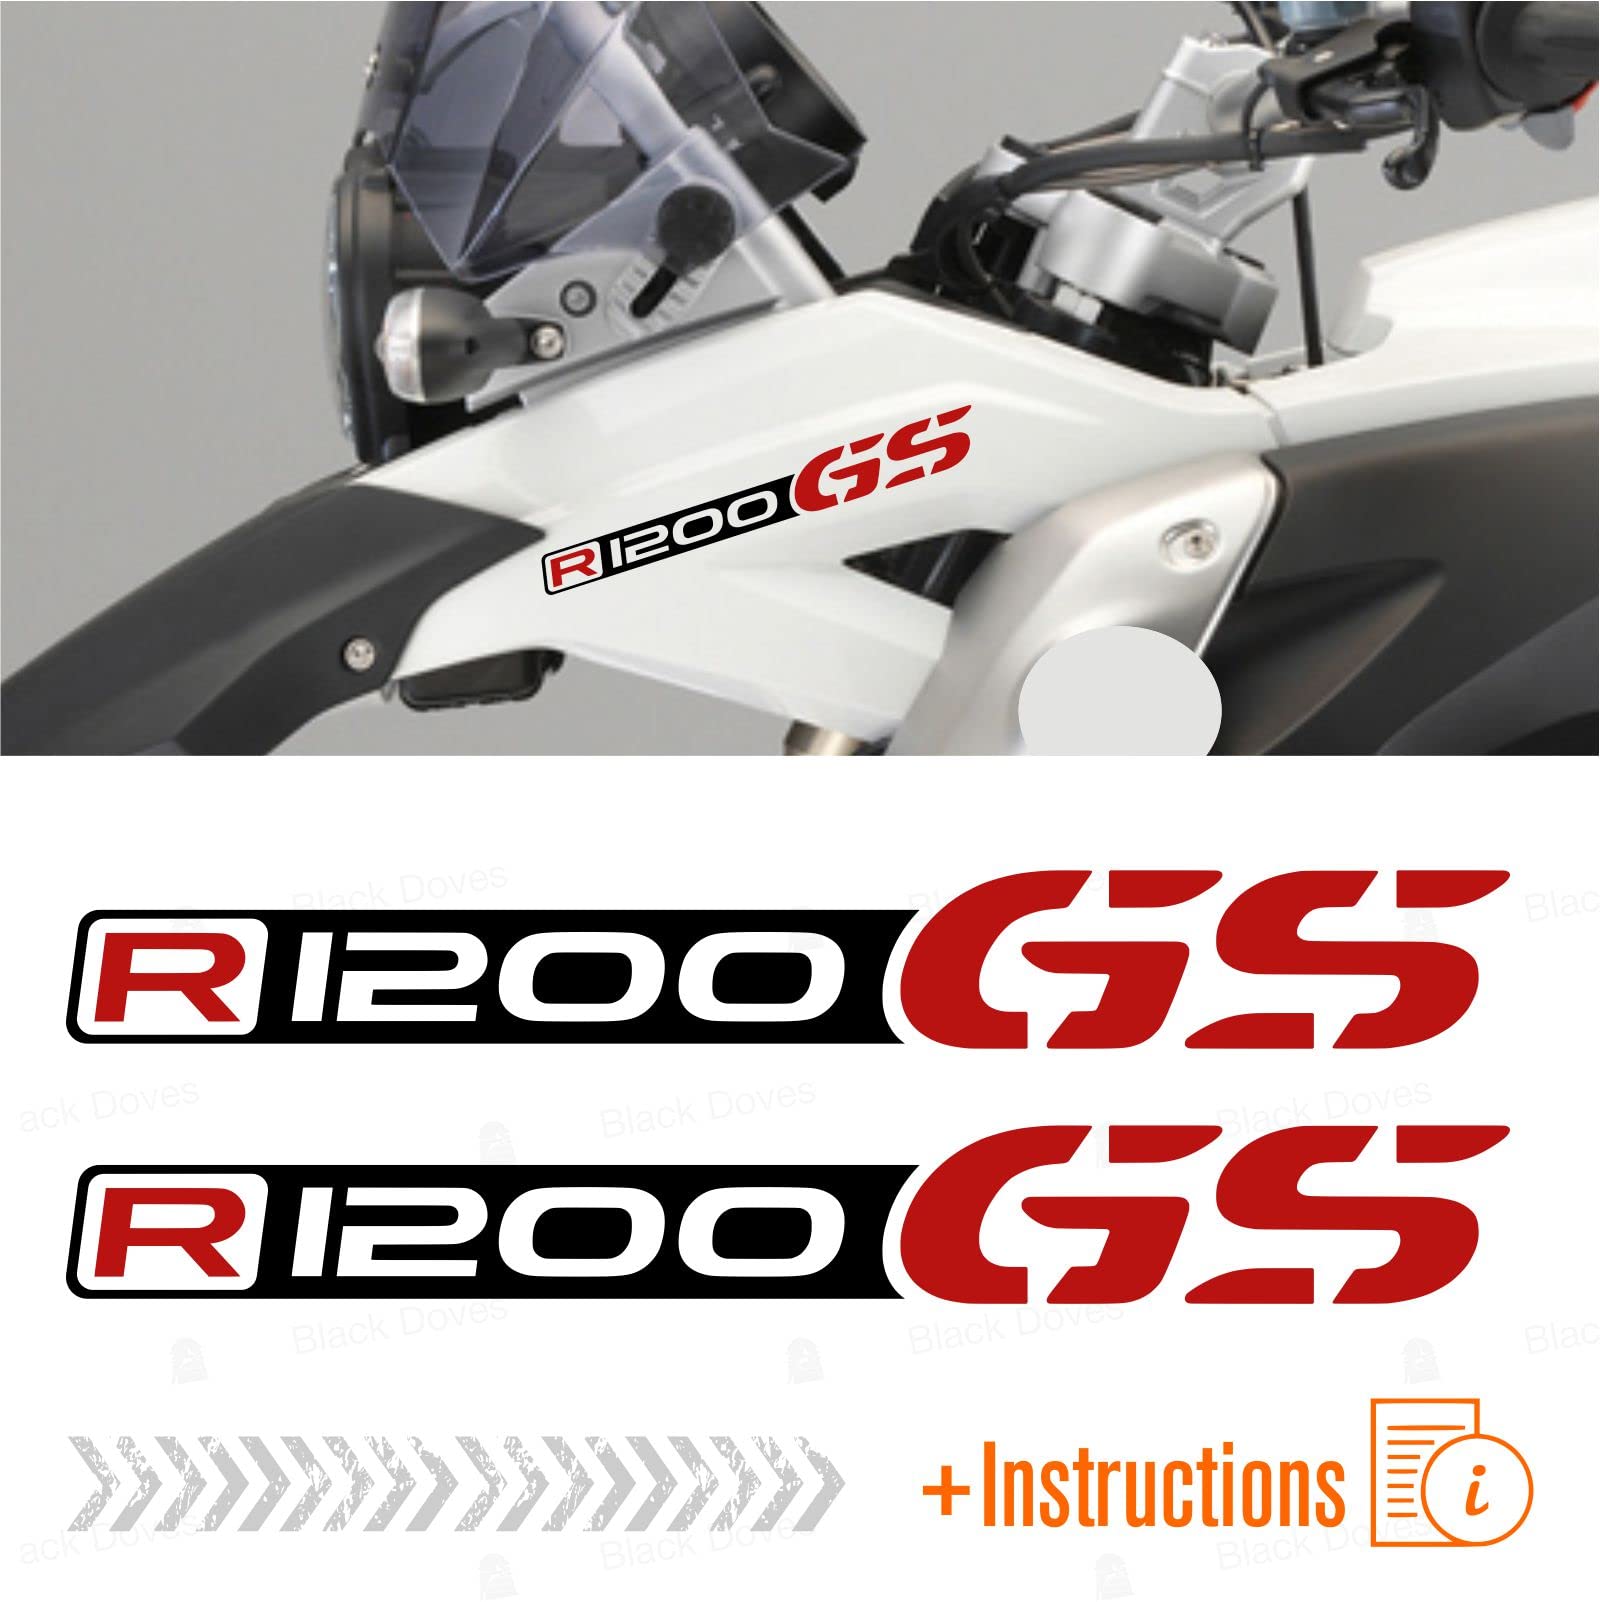 2 Stück Aufkleber kompatibel mit Moto R1200 GS ADVENTURE Motorrad R 1200 (schwarz-rot) von BLACK DOVES GRAPHICS